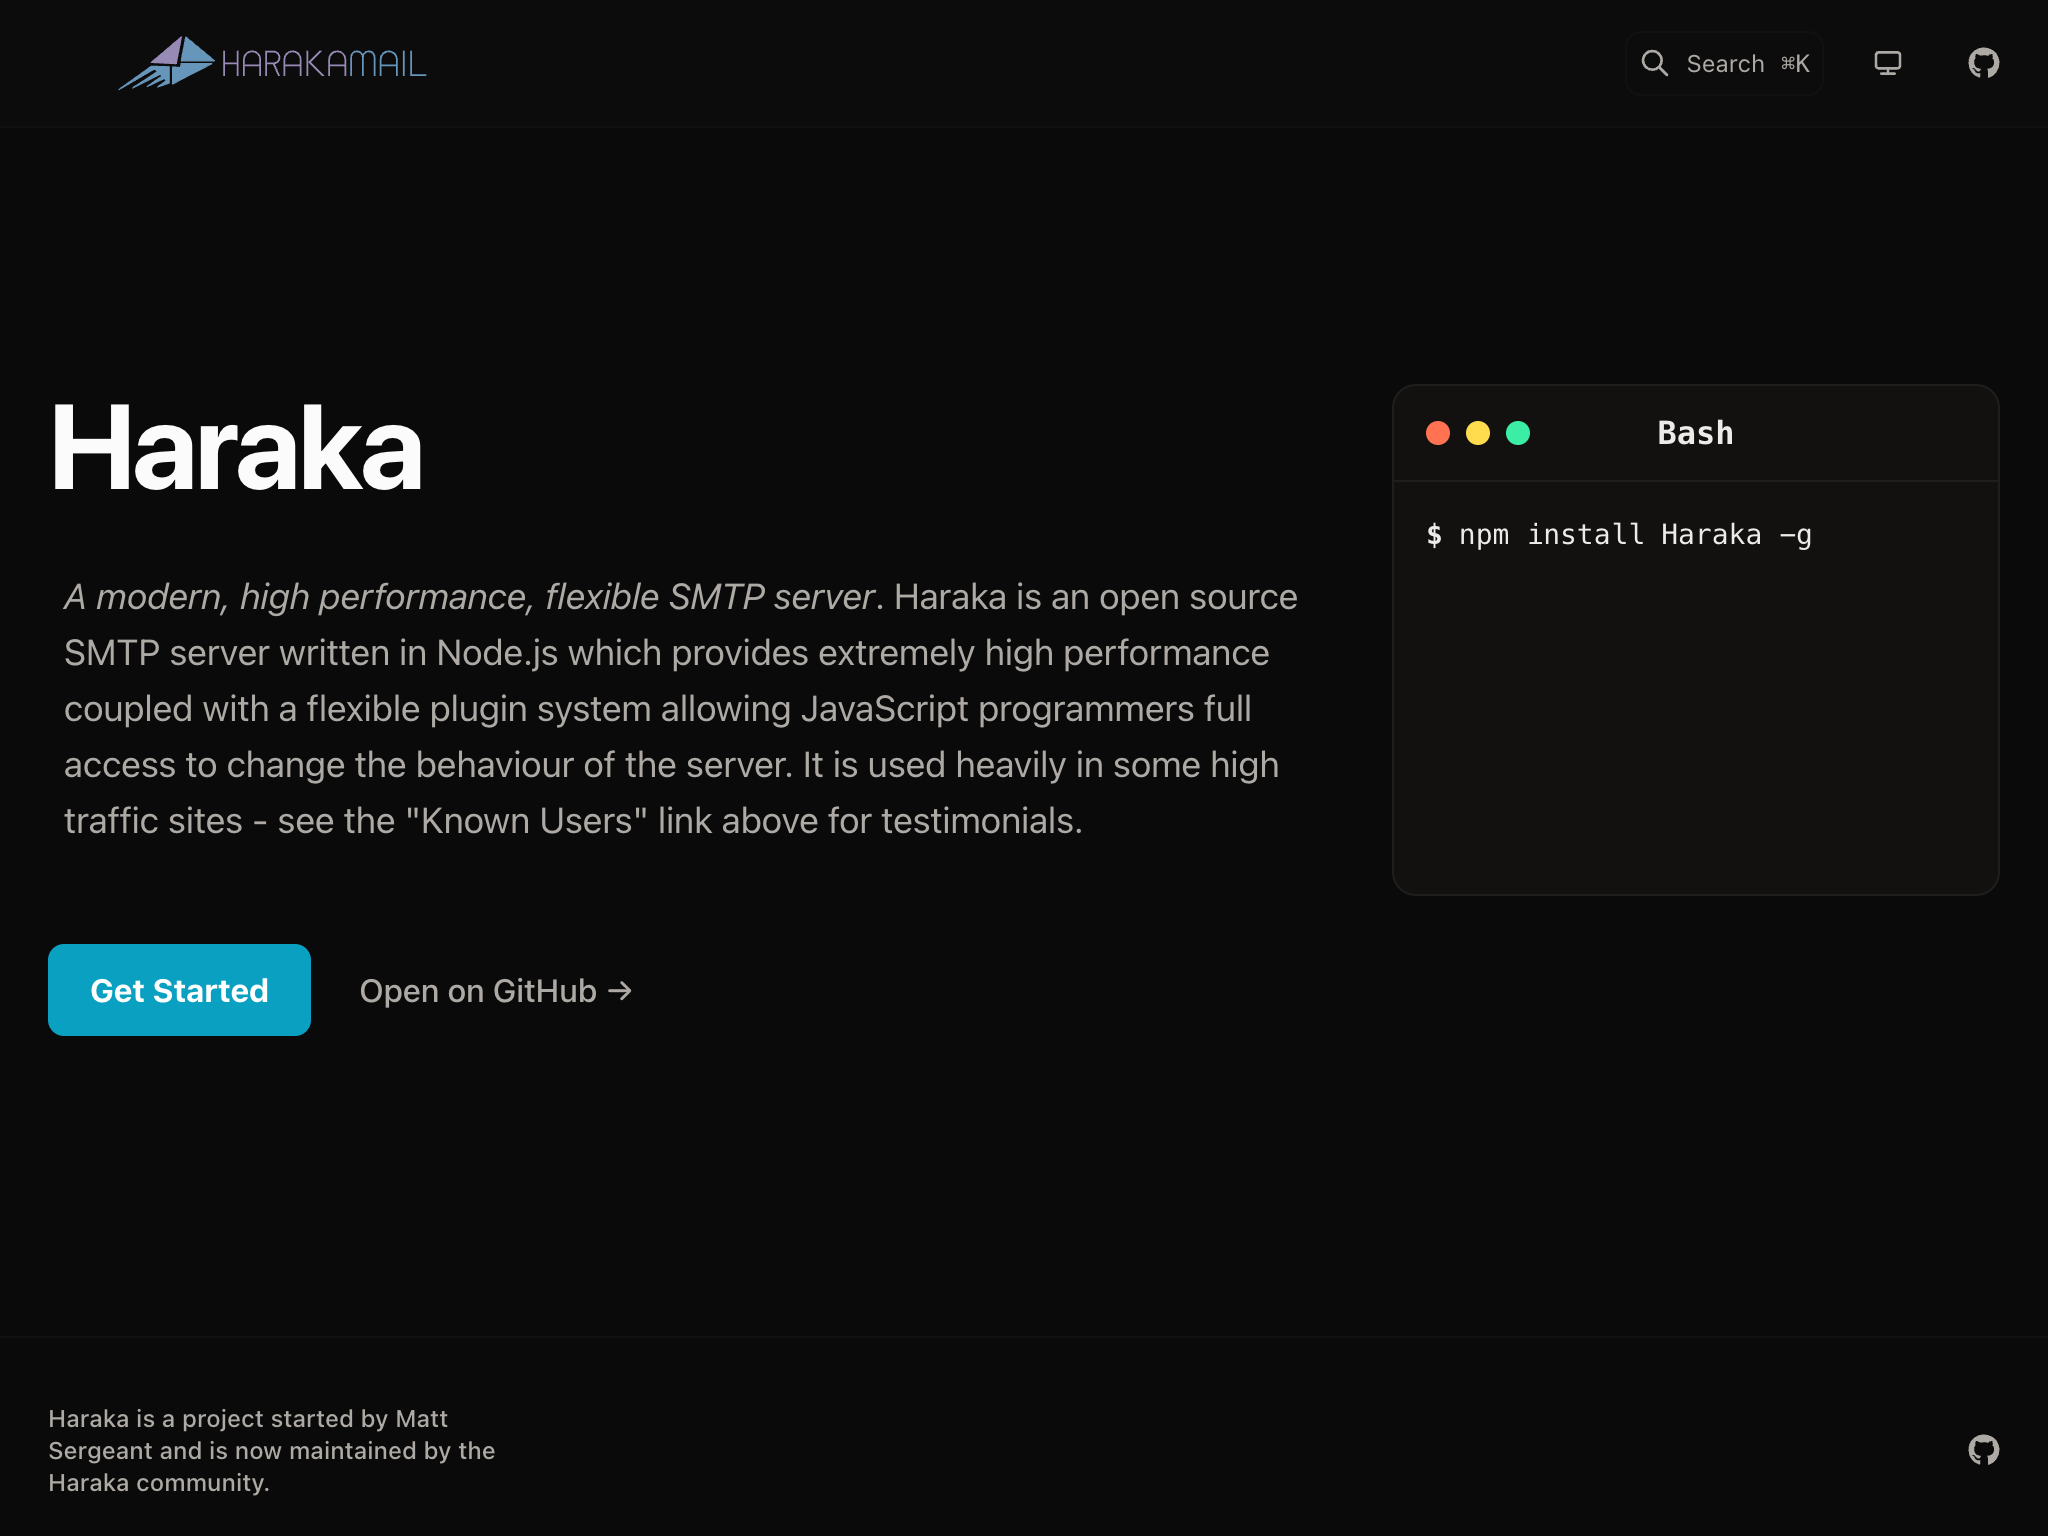 Haraka er en open source-e-mail server for OnePlus .